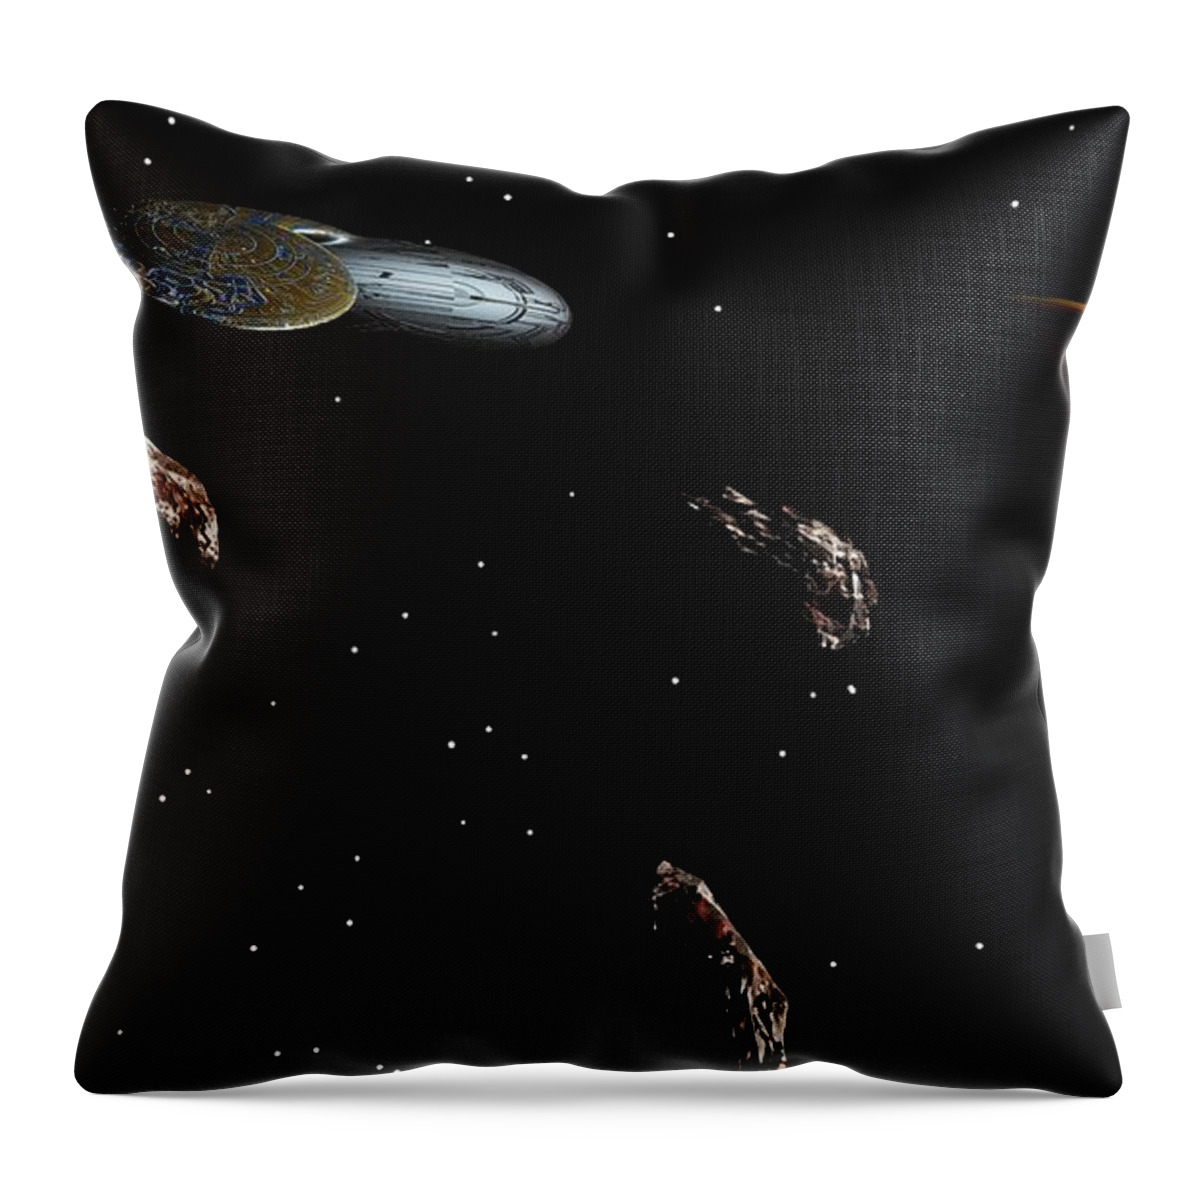 Fine Art Throw Pillow featuring the digital art Navigating an Asteroid Field by David Lane